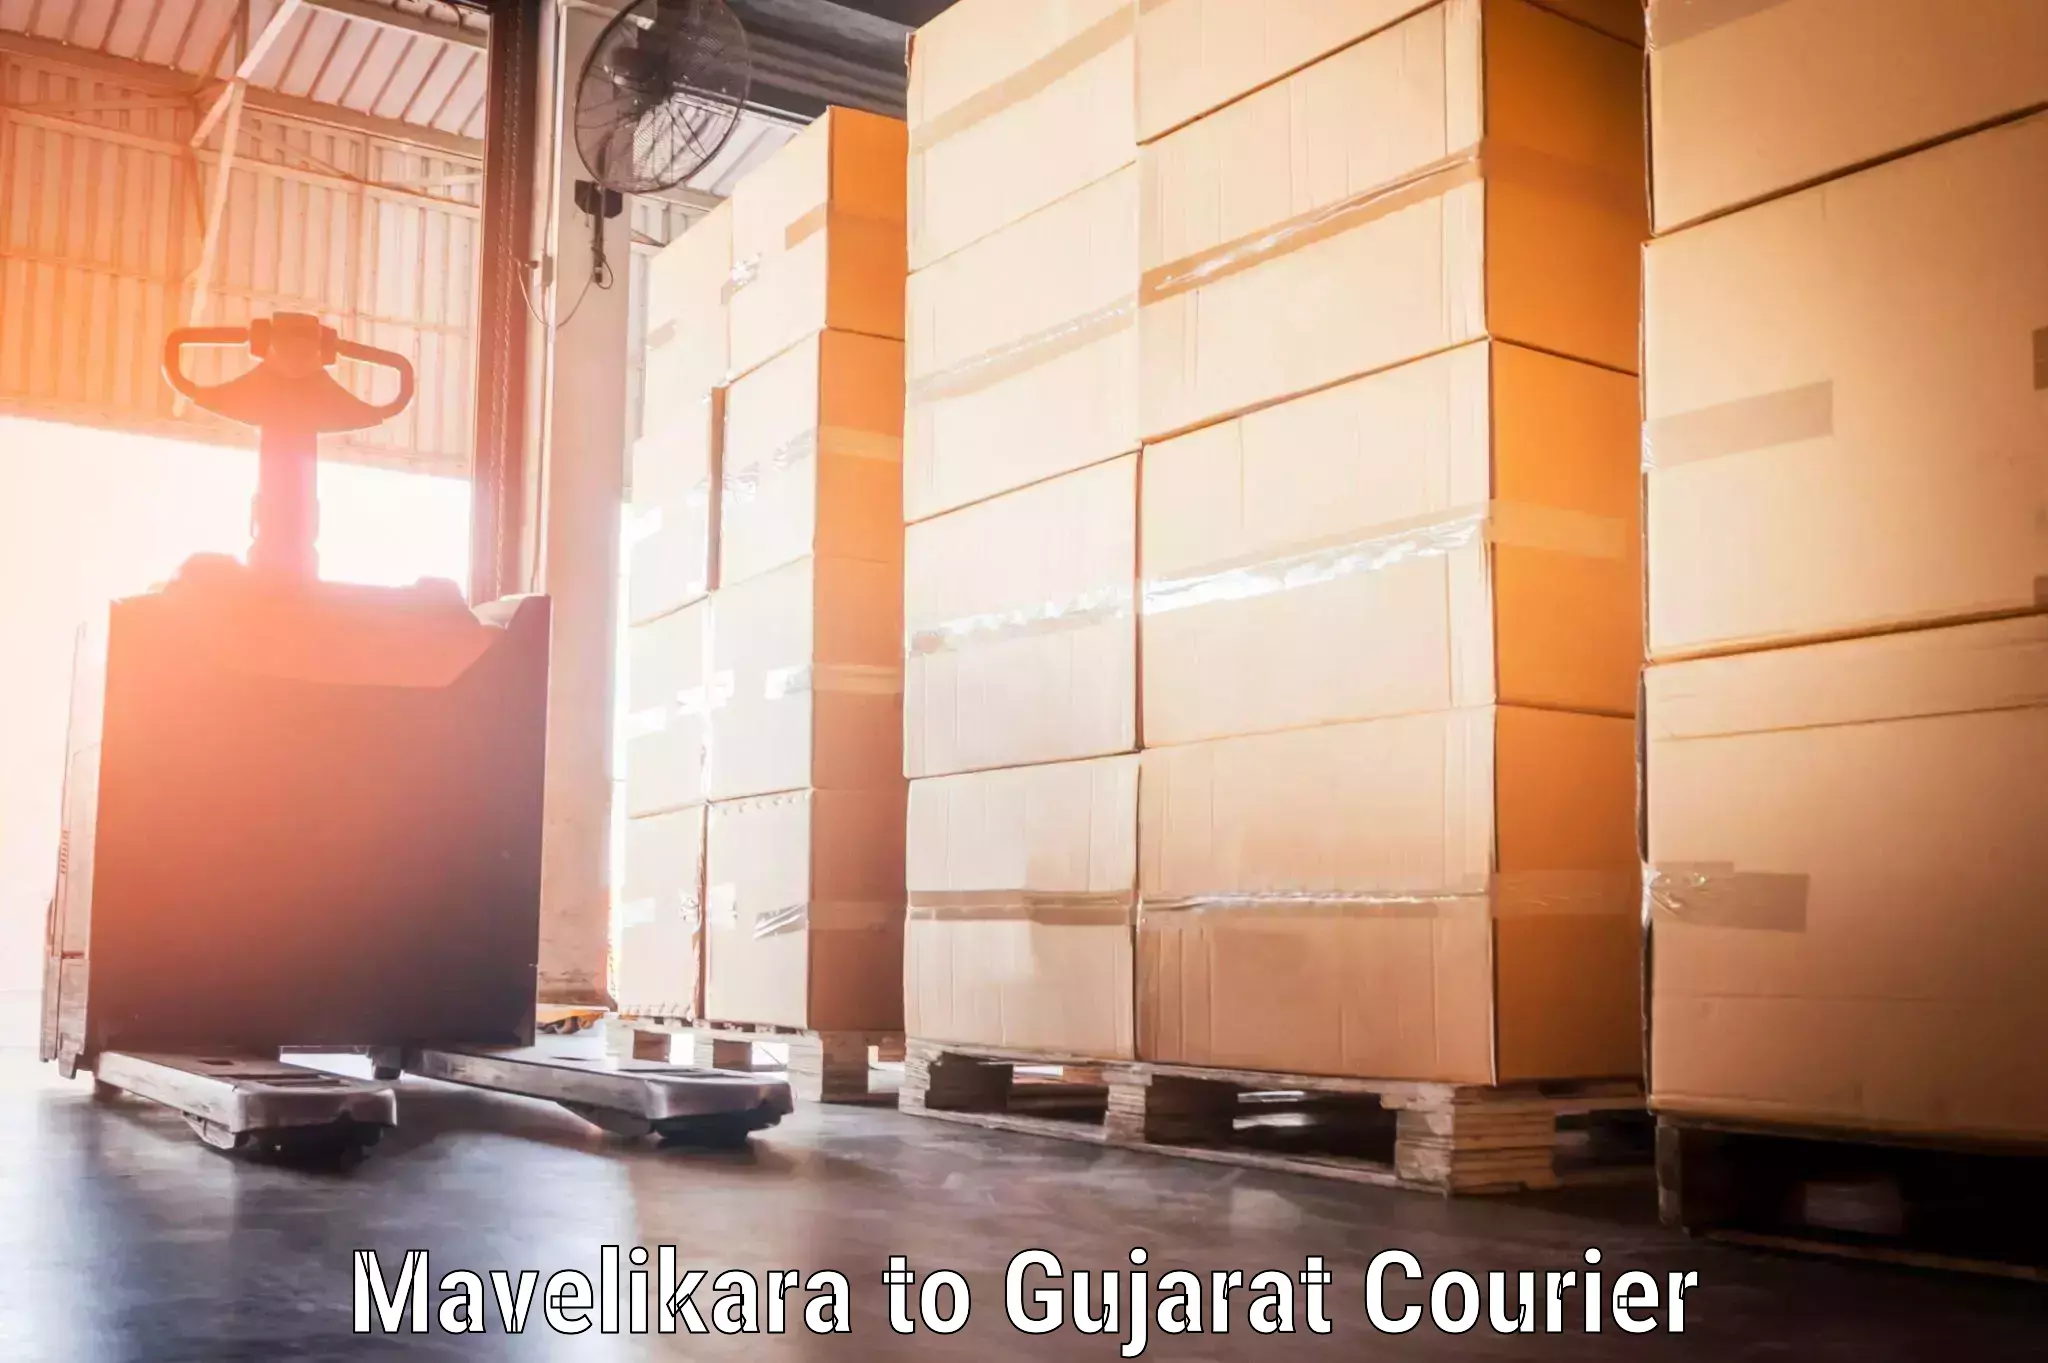 Hassle-free luggage shipping Mavelikara to Patan Gujarat